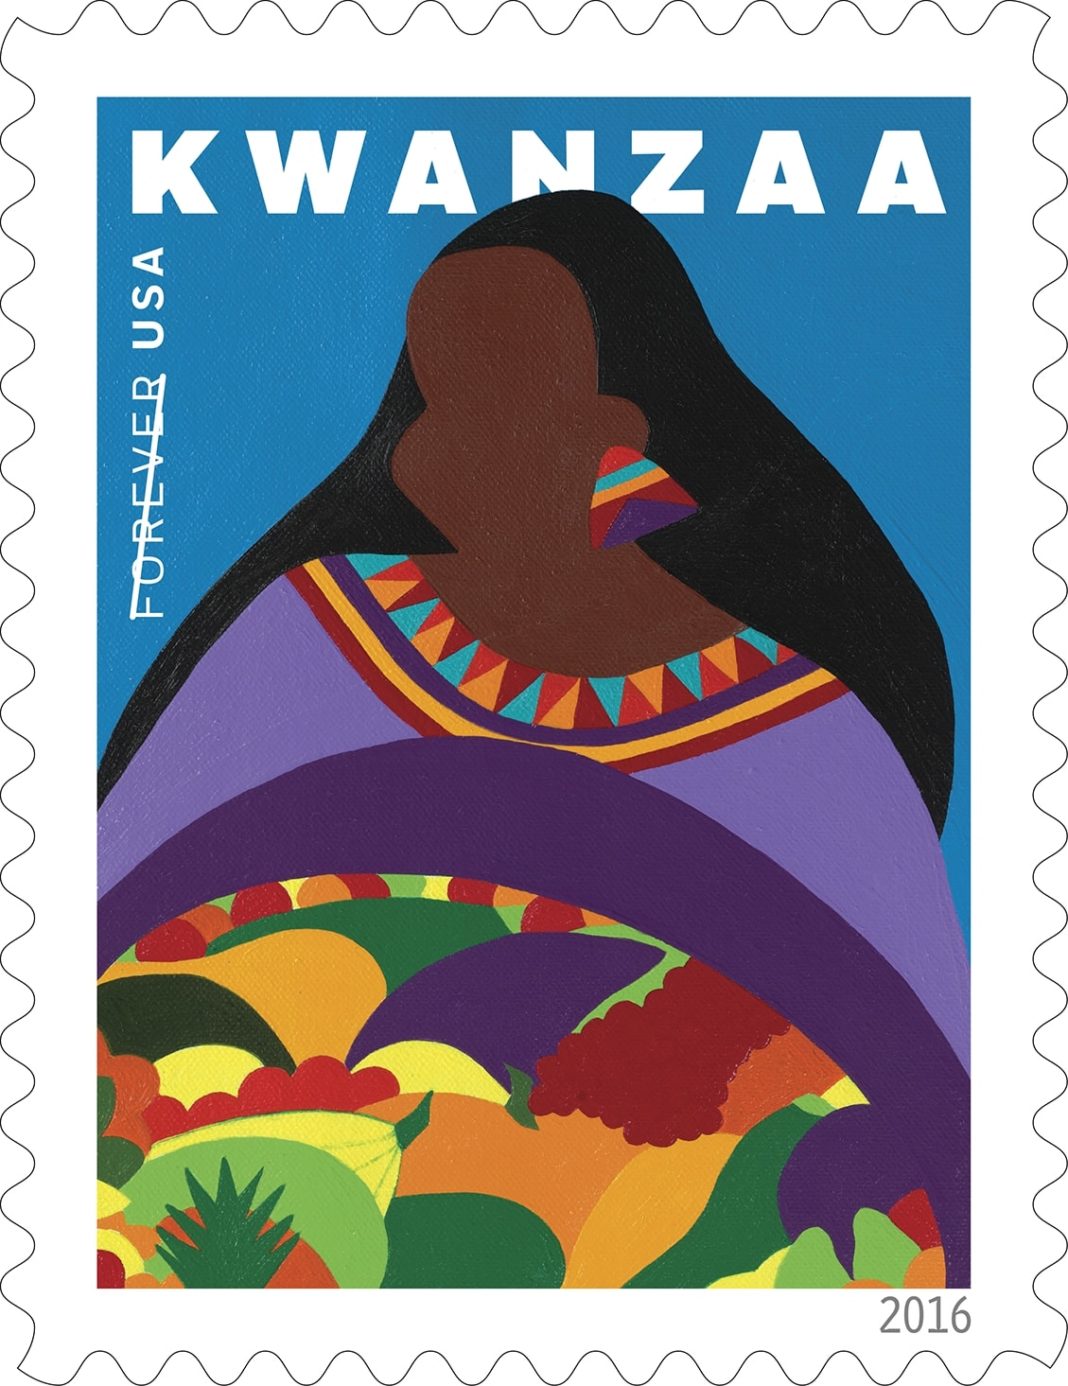 The 2016 Kwanzaa Stamp 